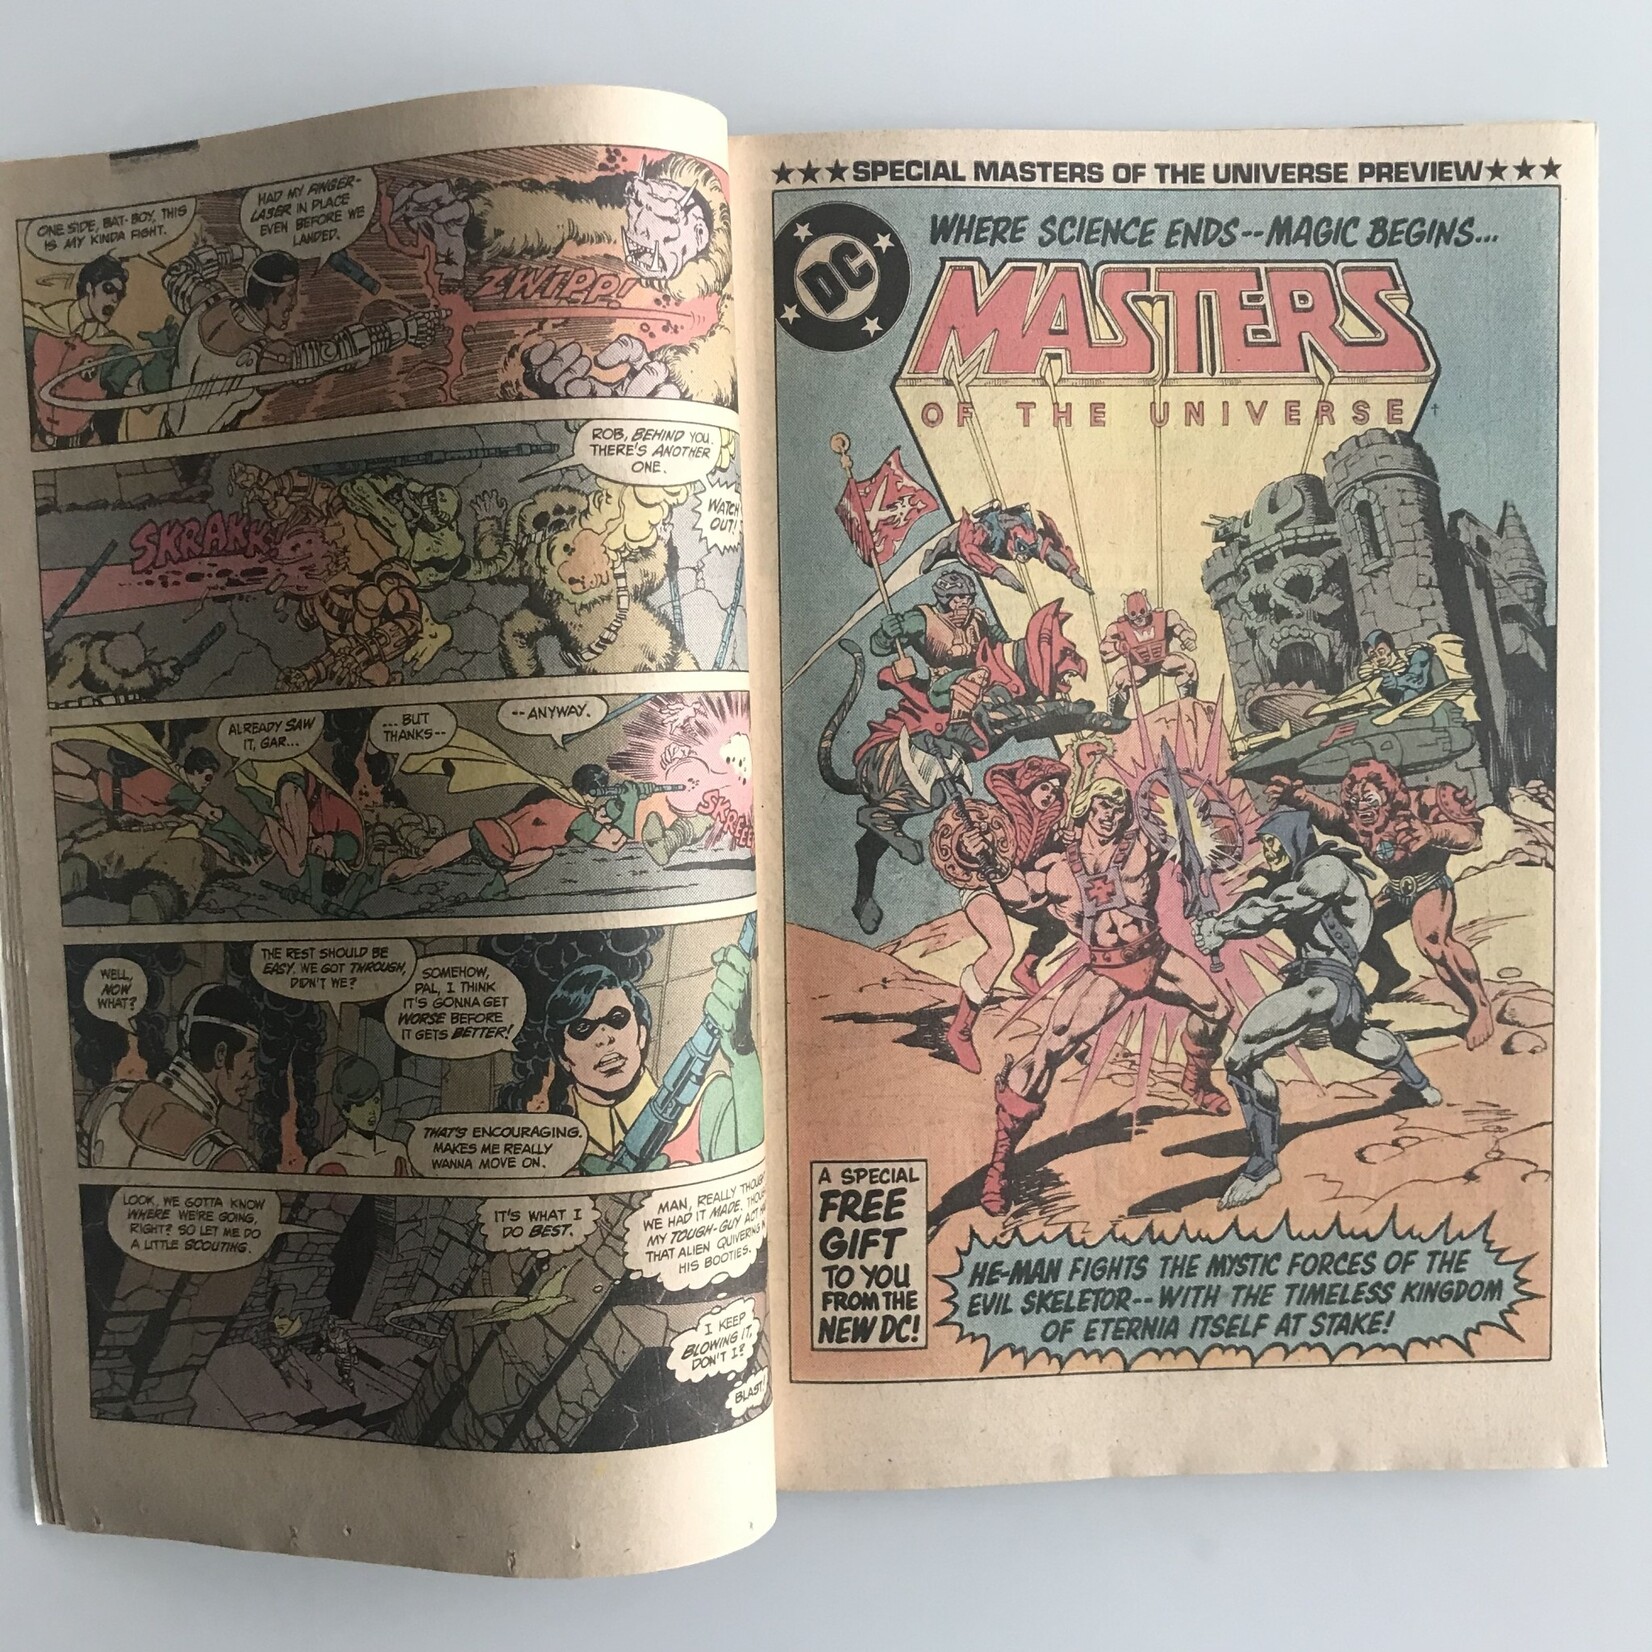 New Teen Titans - Vol. 1 #25 November 1982 - Comic Book